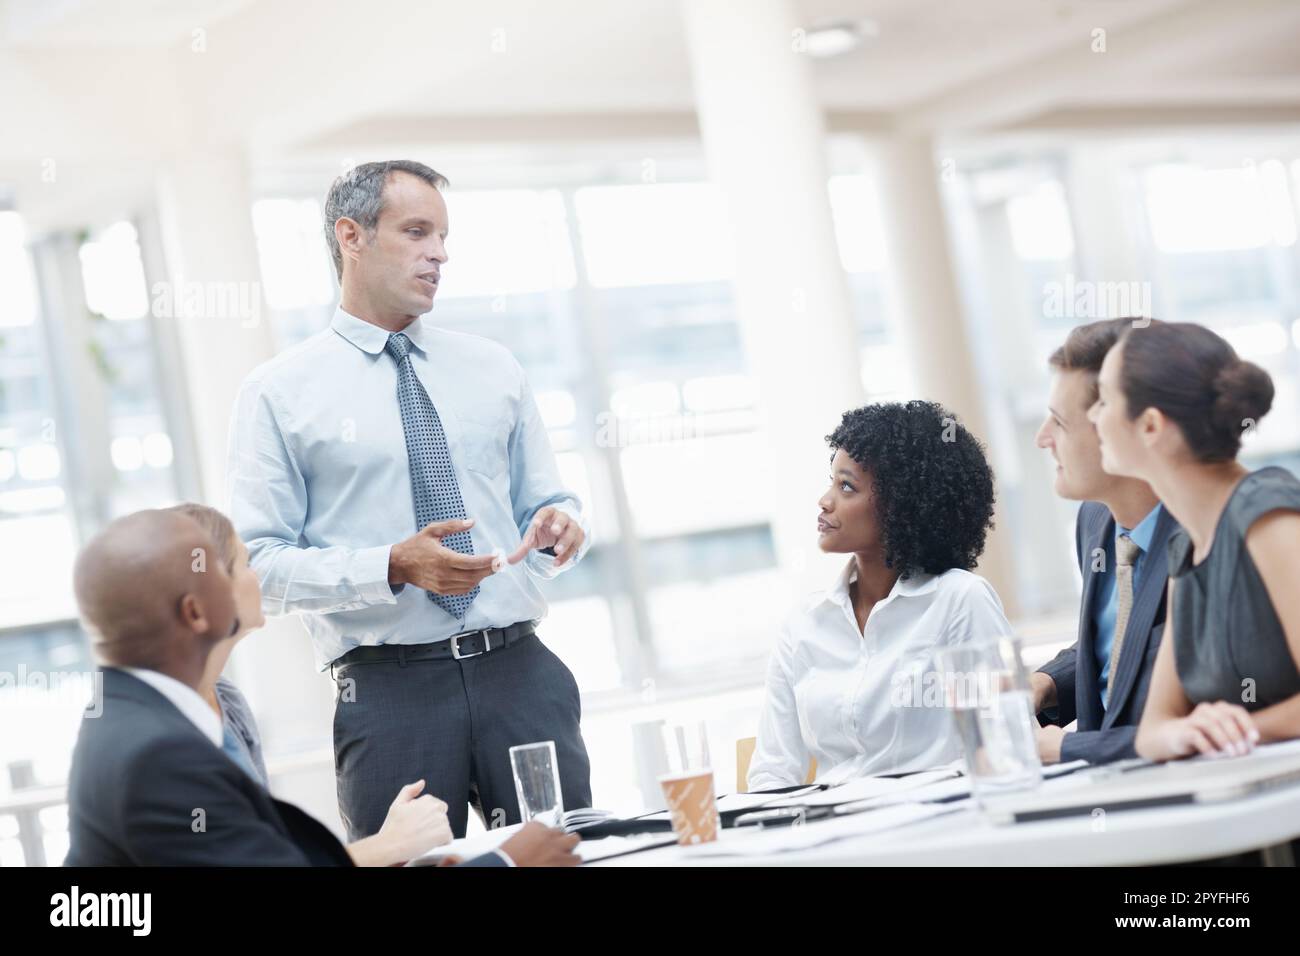 Theres alcuni cambiamenti Id gradiscono da implementare. Un gruppo multietnico di uomini d'affari che ascoltano il loro capo durante una riunione. Foto Stock